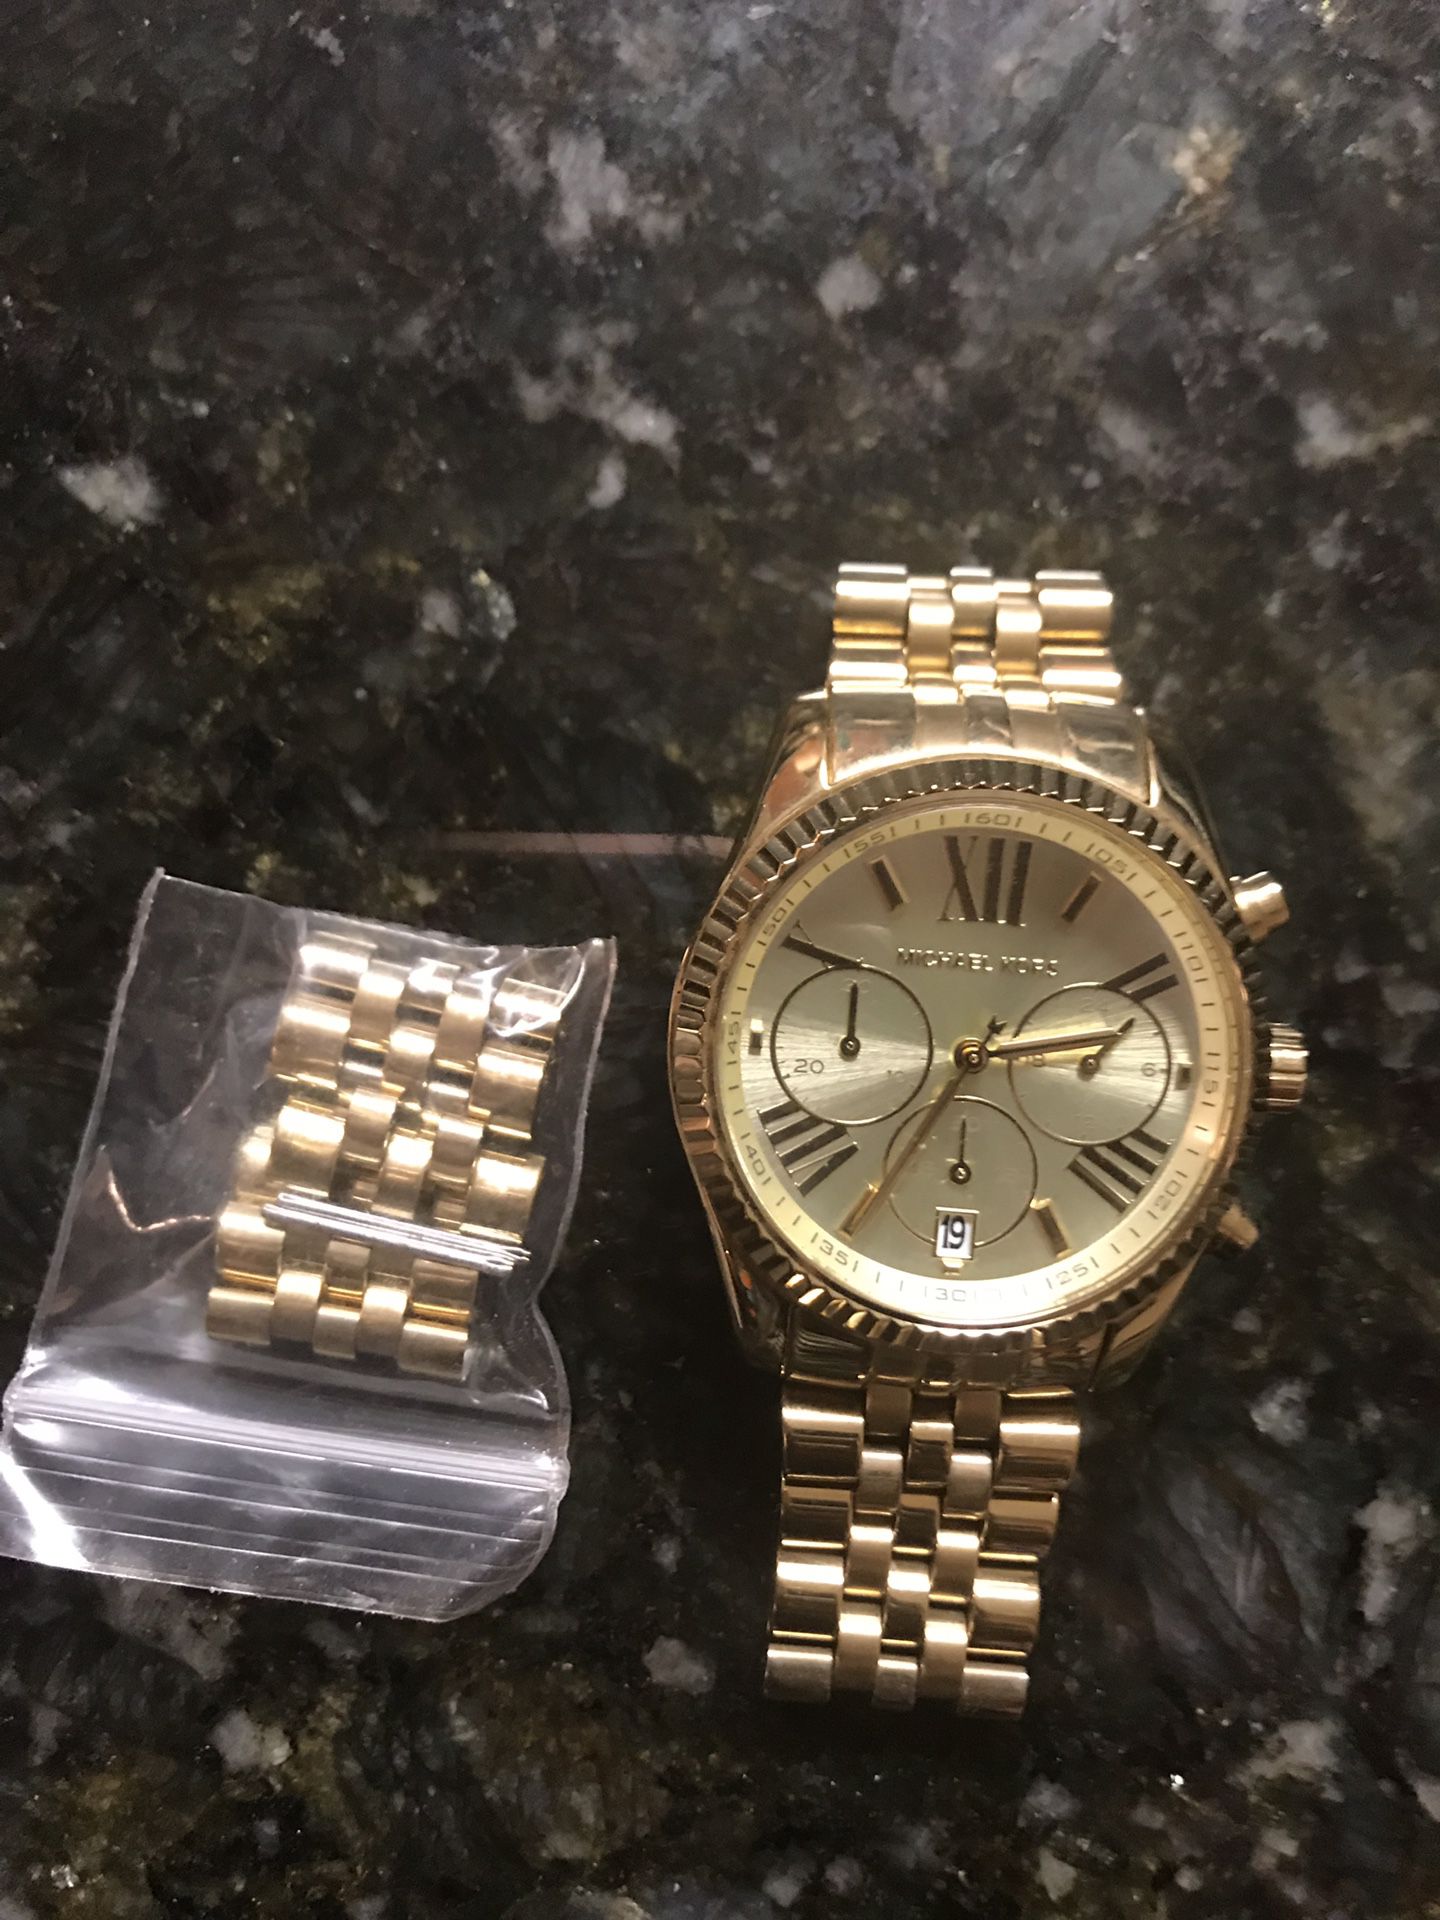 Gold Michael Kors Women’s Watch - $95.